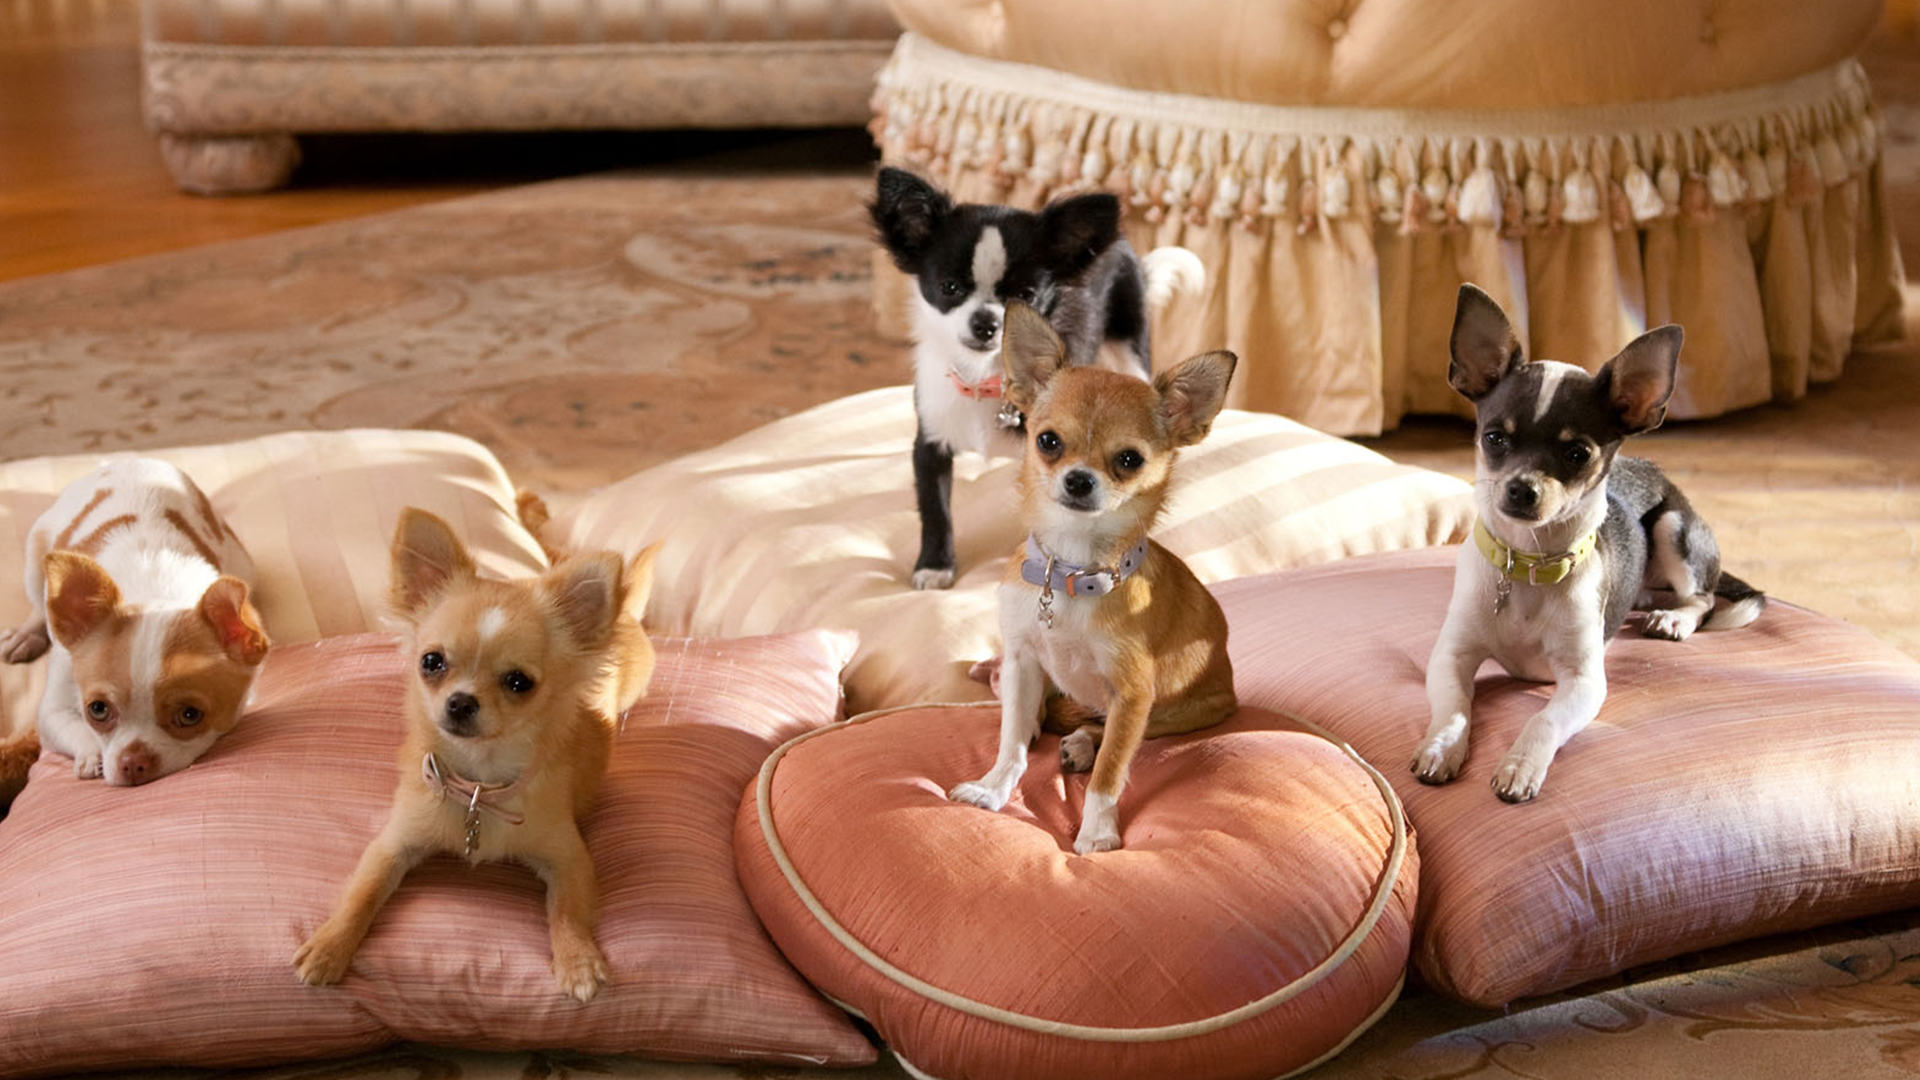 Le Chihuahua de Beverly Hills 2: La Famille Vient de S’Agrandir